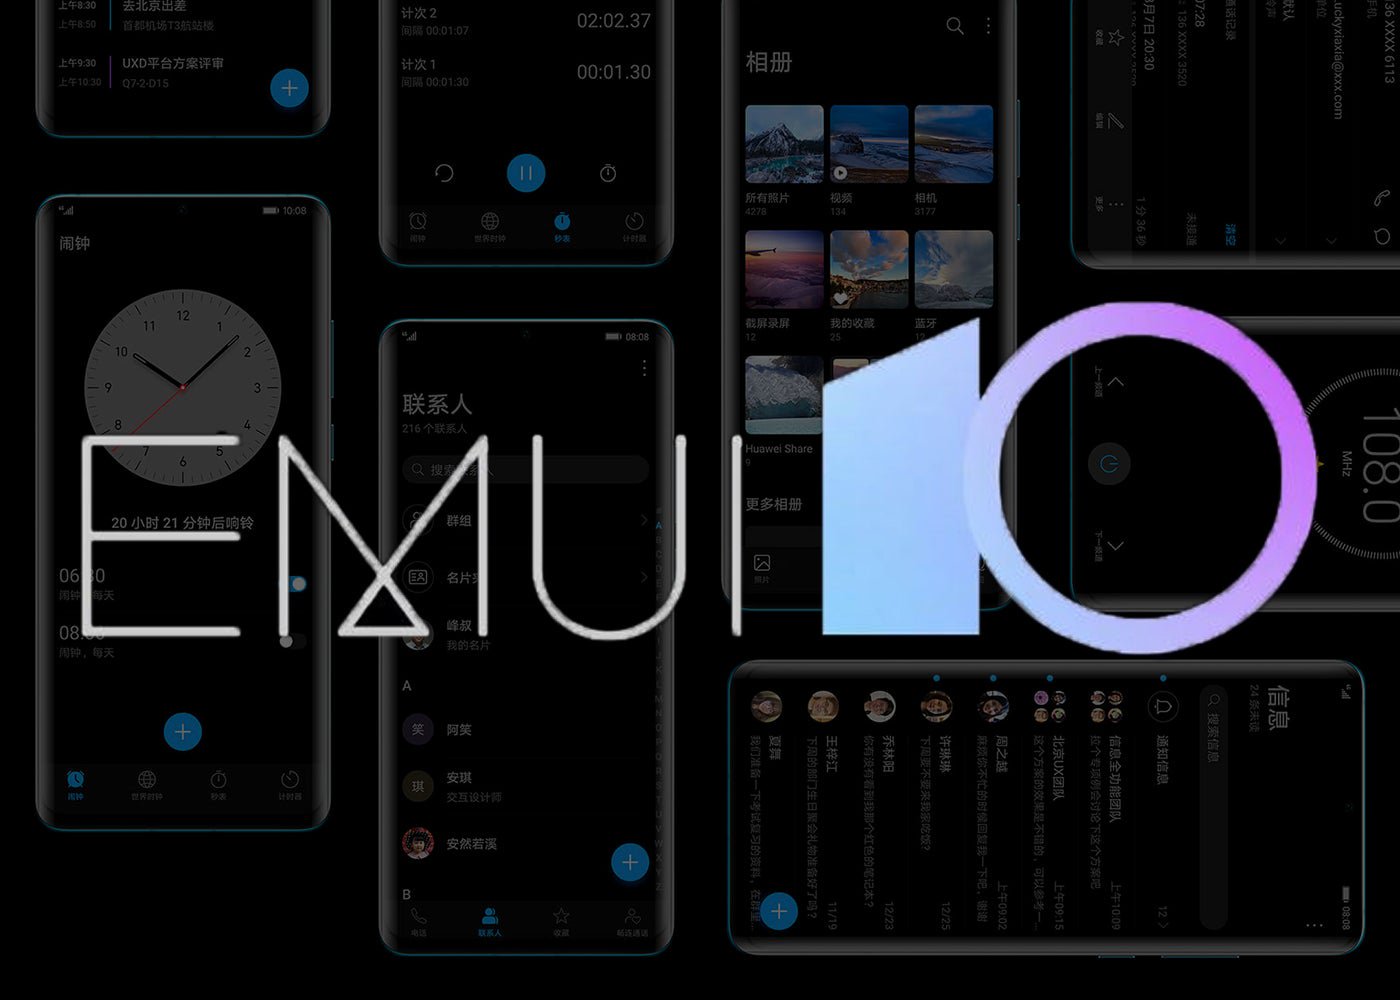 Официально: это телефоны Huawei и Honor, которые будут обновлены до EMUI 10 с Android Q